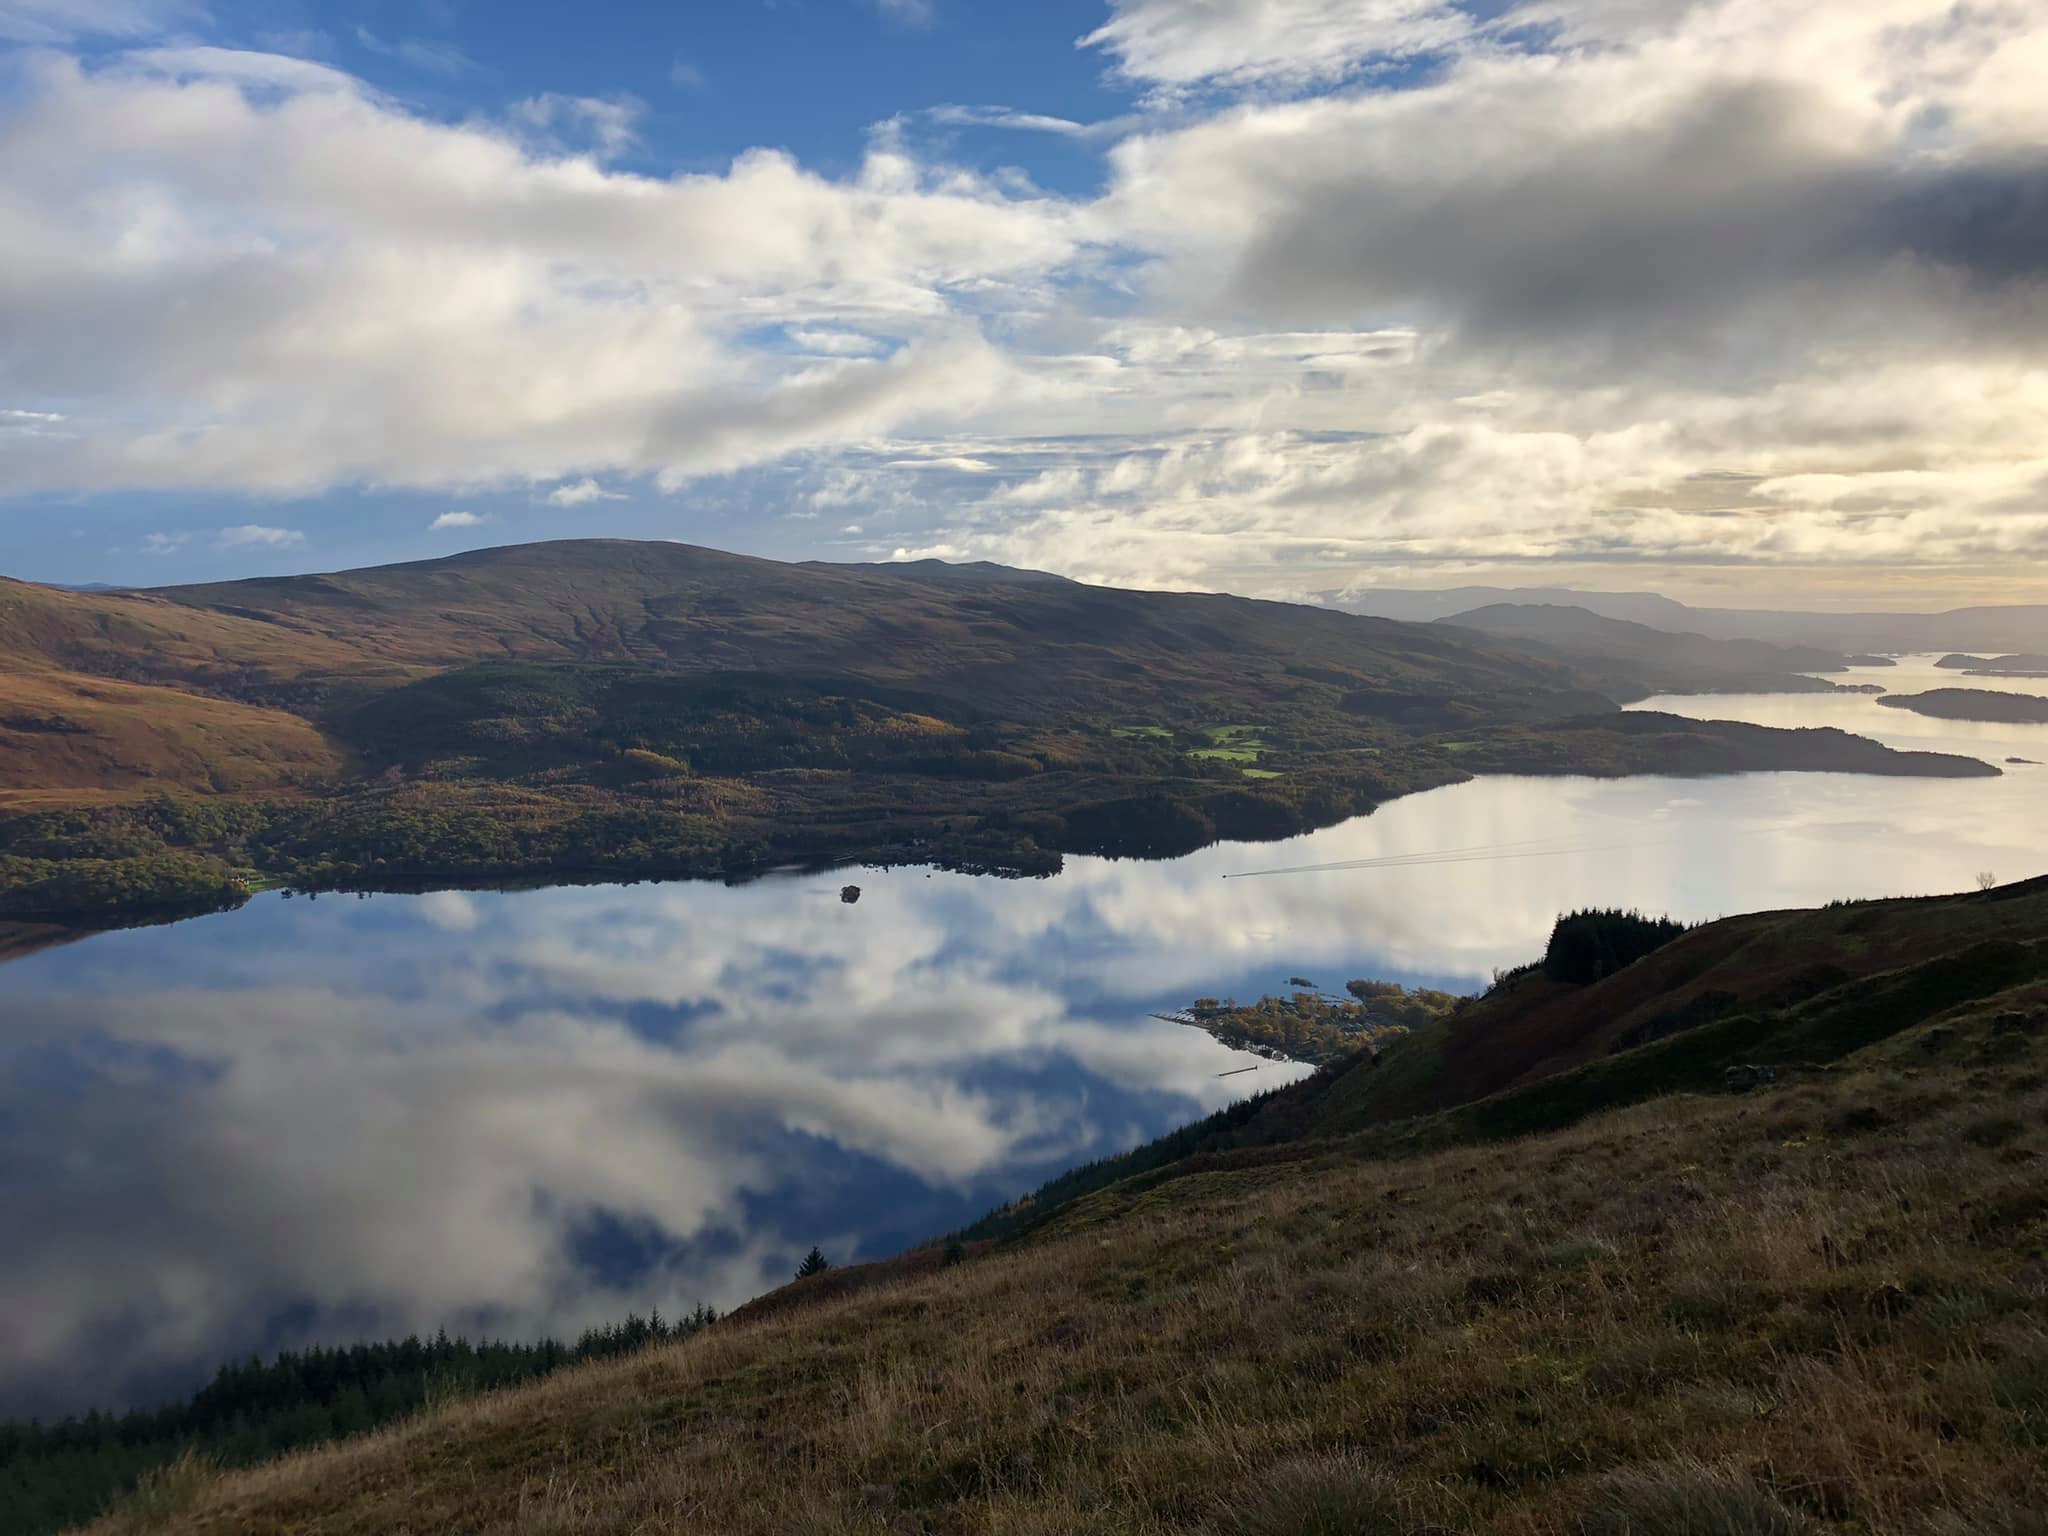 Loch Lomond from Inverbeg, by Charlie McGinn